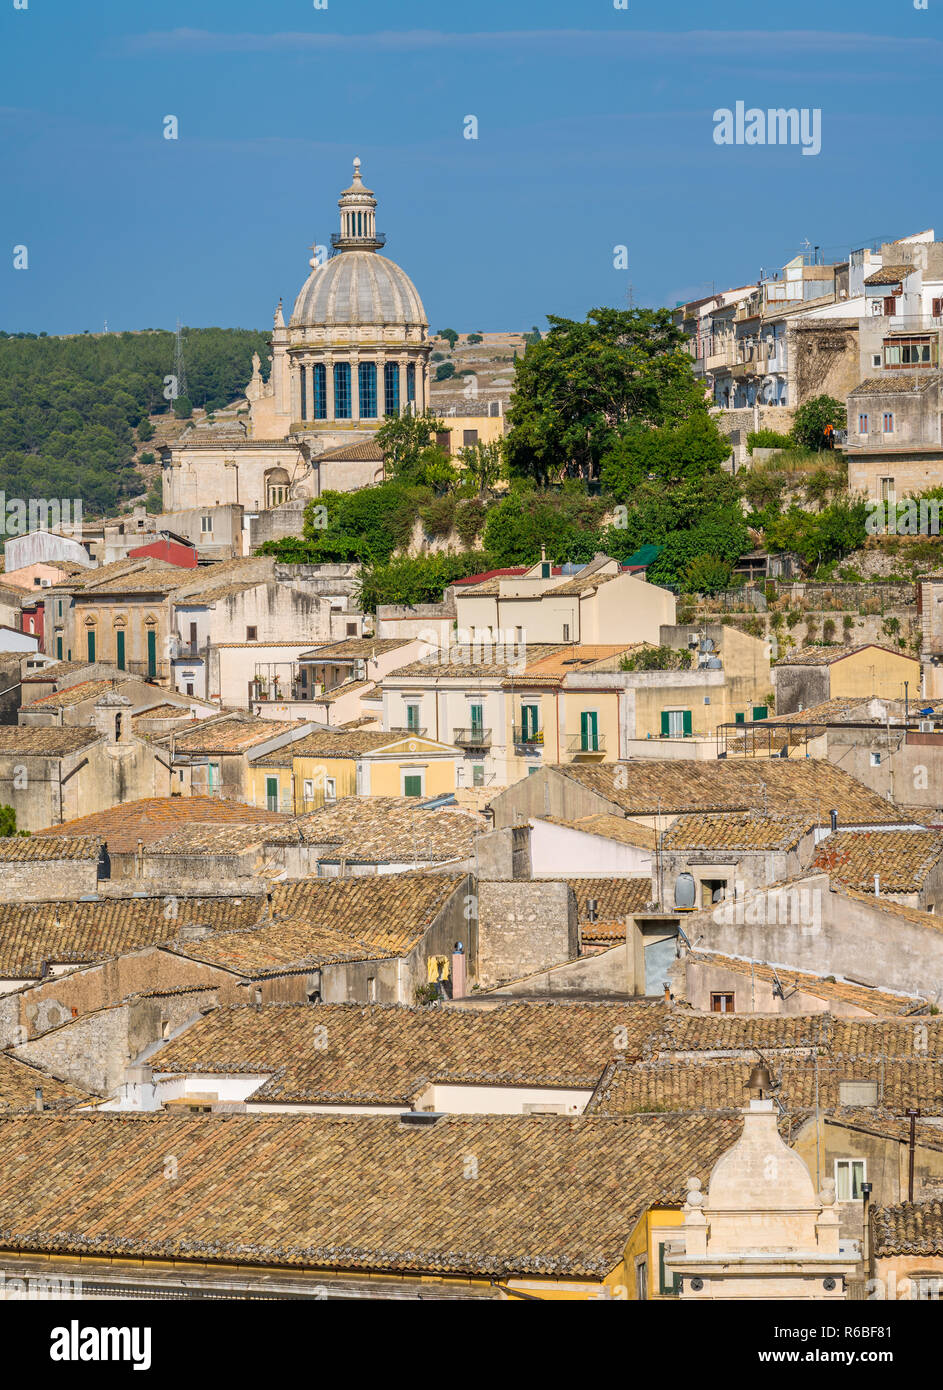 Vue panoramique de Ragusa Ibla avec le dôme de la cathédrale San Giorgio. La Sicile (Sicilia), dans le sud de l'Italie. Banque D'Images